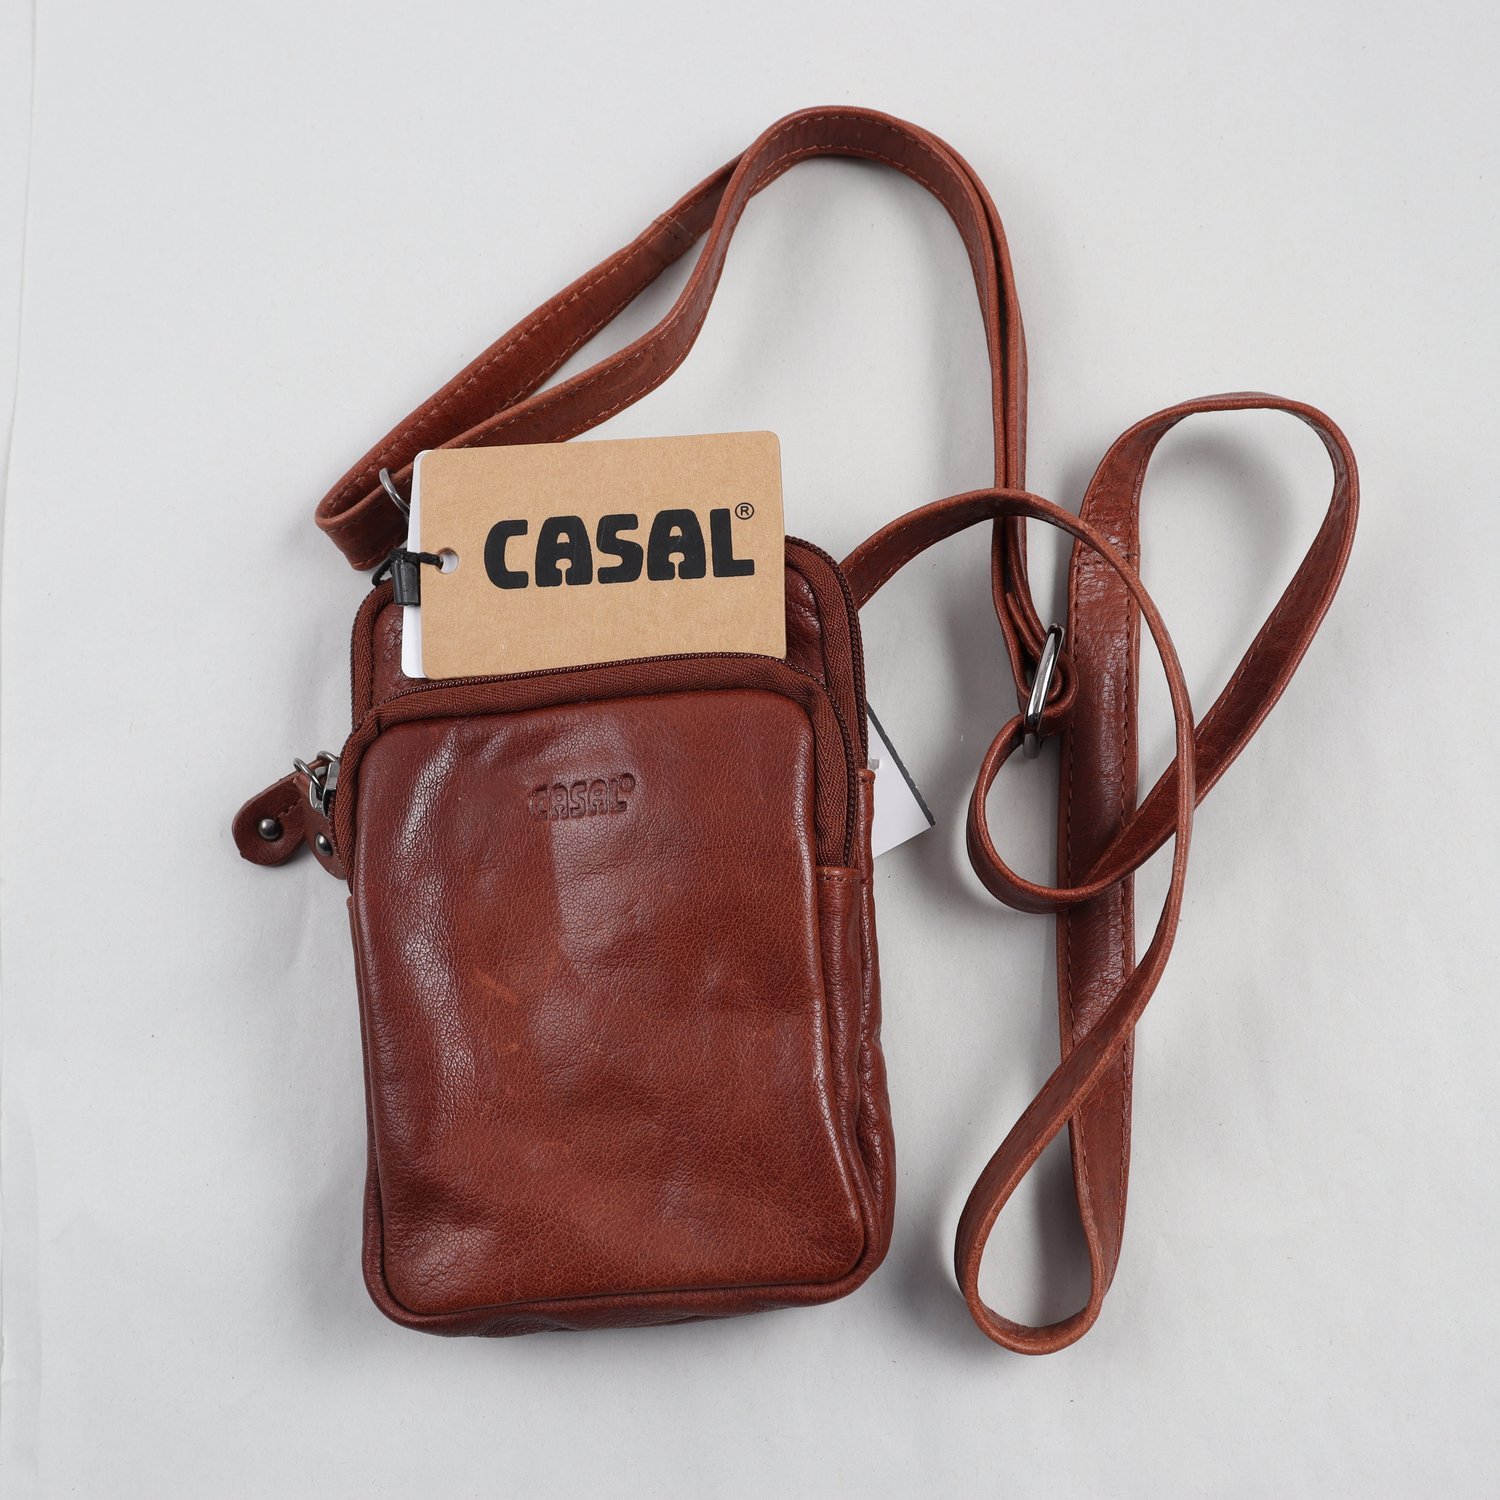 Väska, Casal, skinn, brun